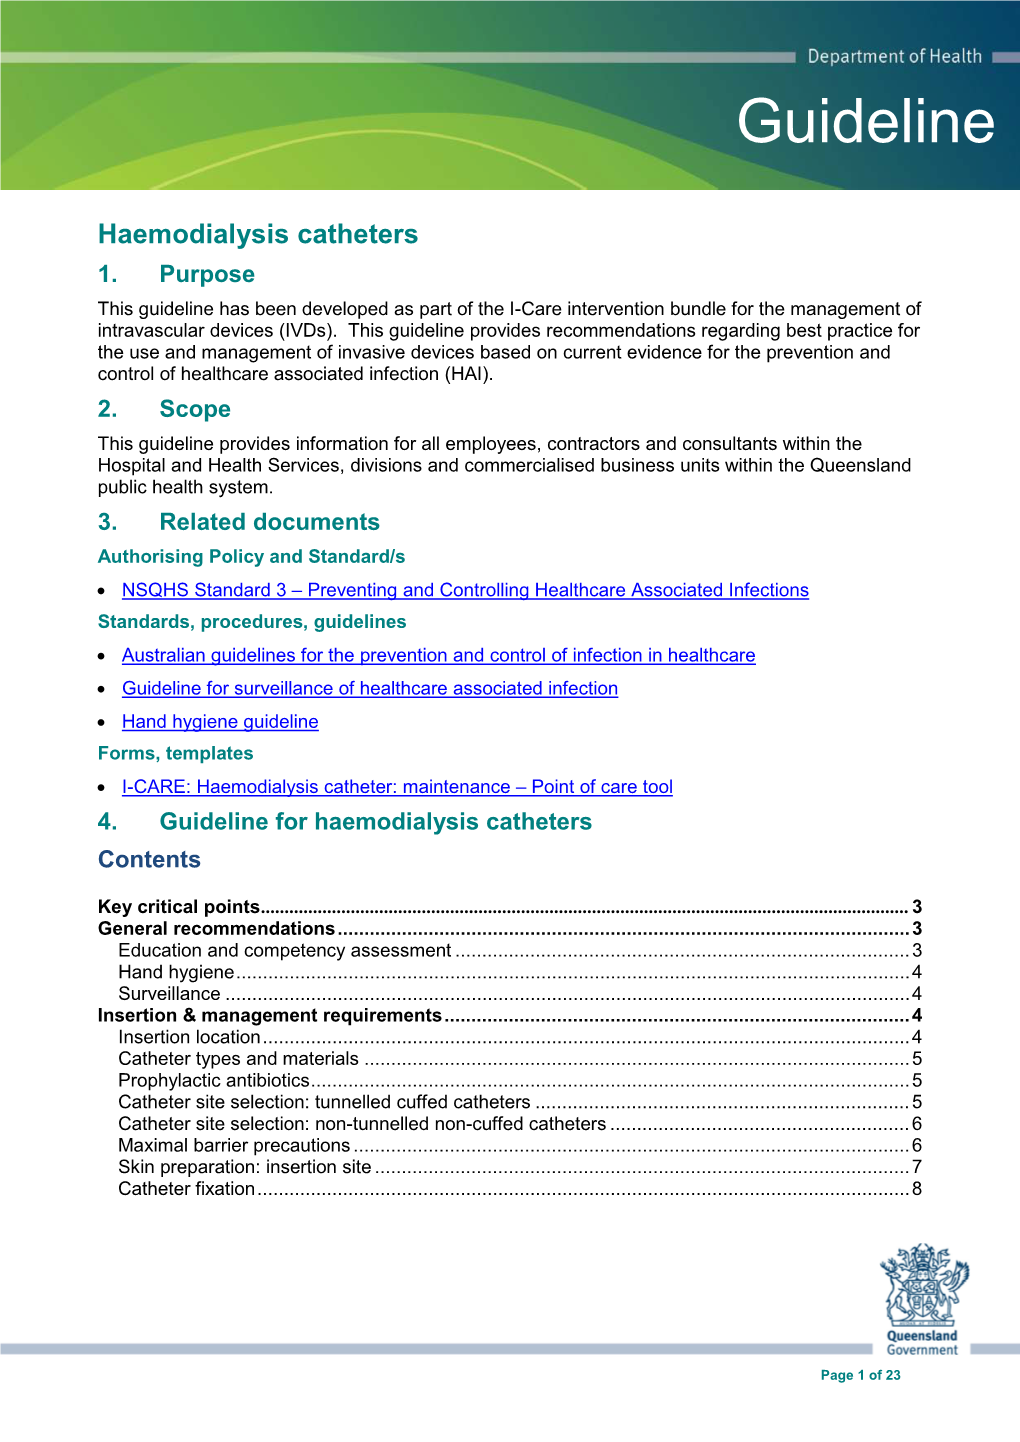 Guideline: Haemodialysis Catheters